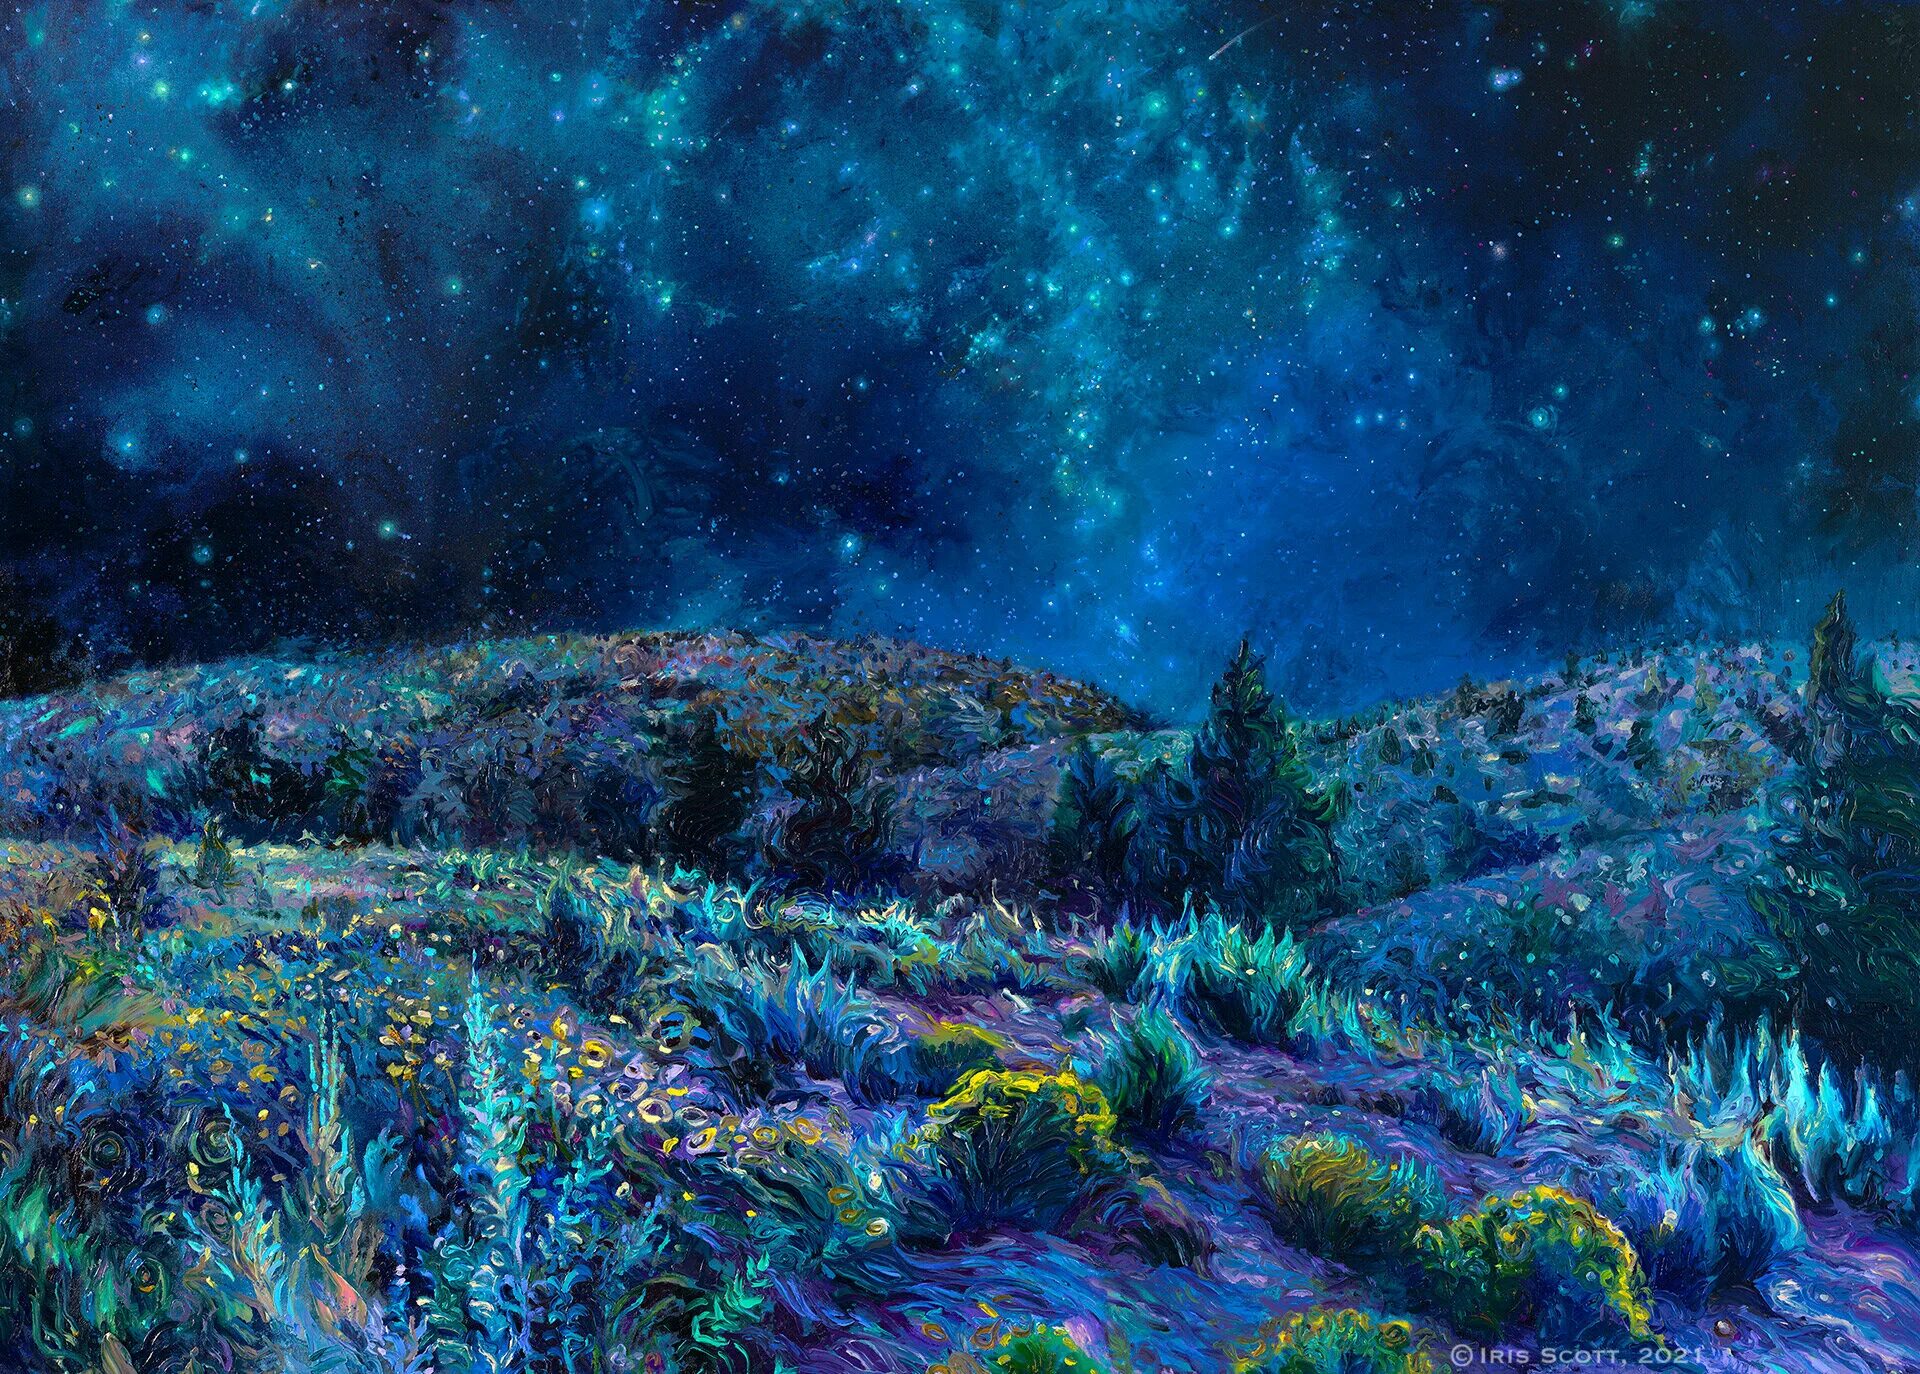 Айрис Скотт (Iris Scott). Картины пейзажи Айрис Скотт. Ночное небо живопись. Звёздная ночь. Художник рисует звездное небо подчеркни в предложении